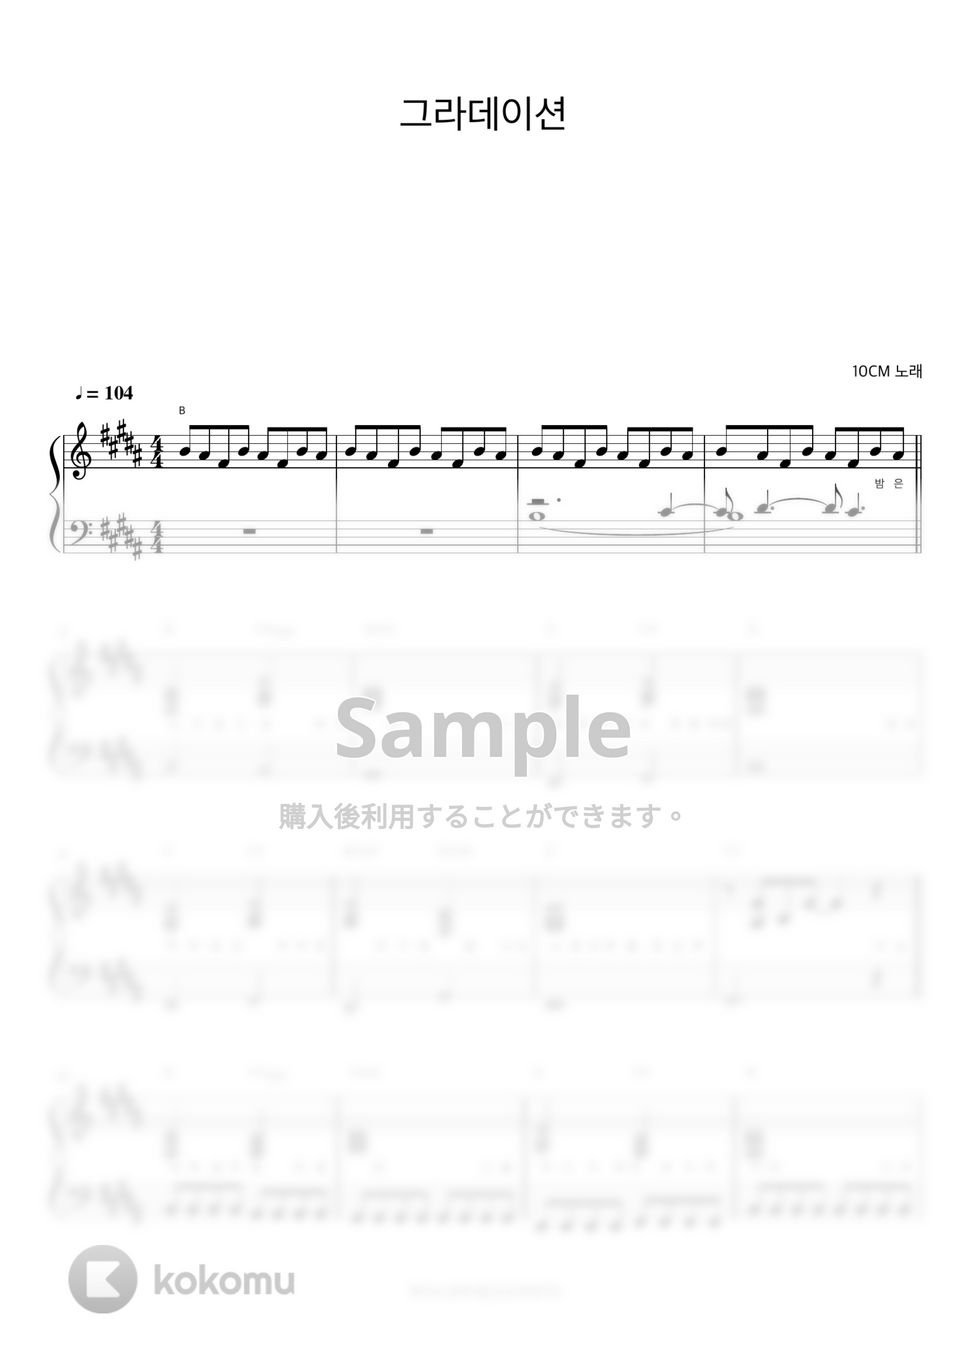 10CM - 그라데이션 (반주악보) by 피아노정류장